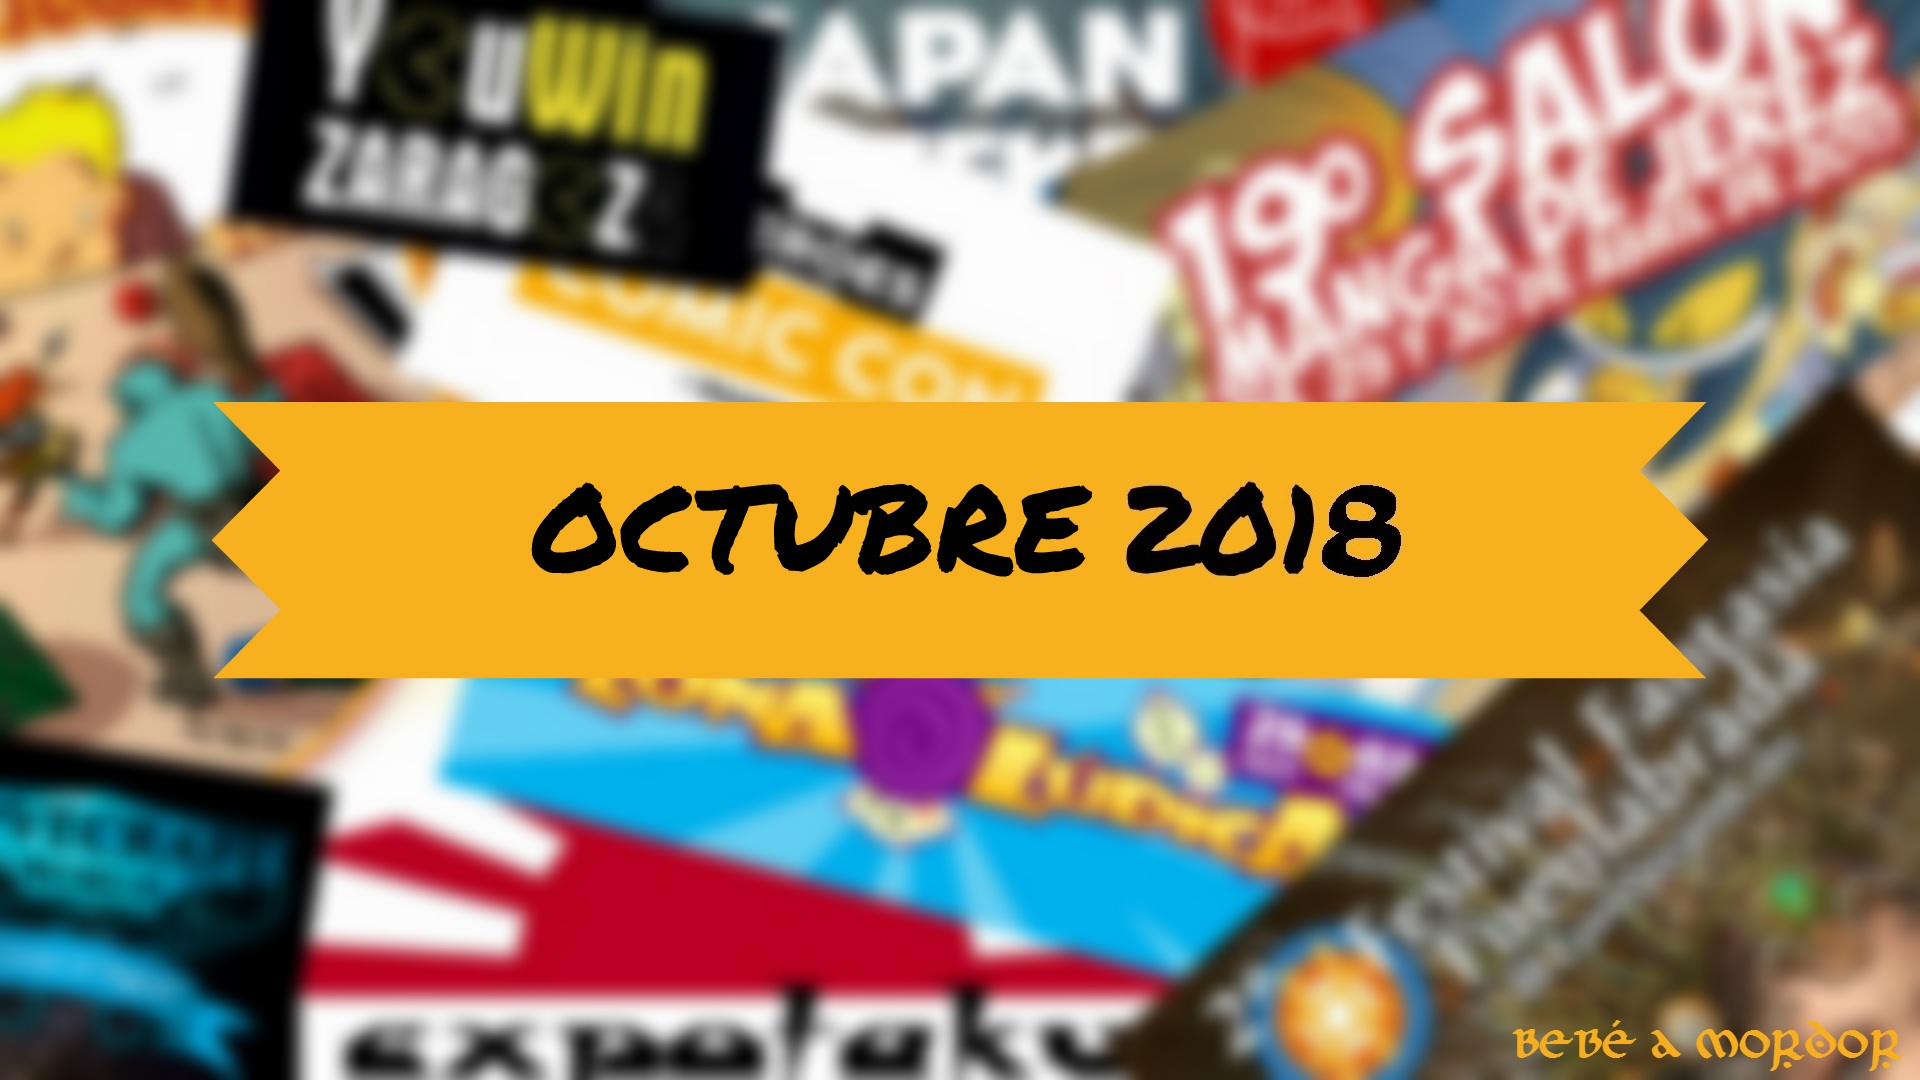 Calendario friki de octubre 2018 eventos